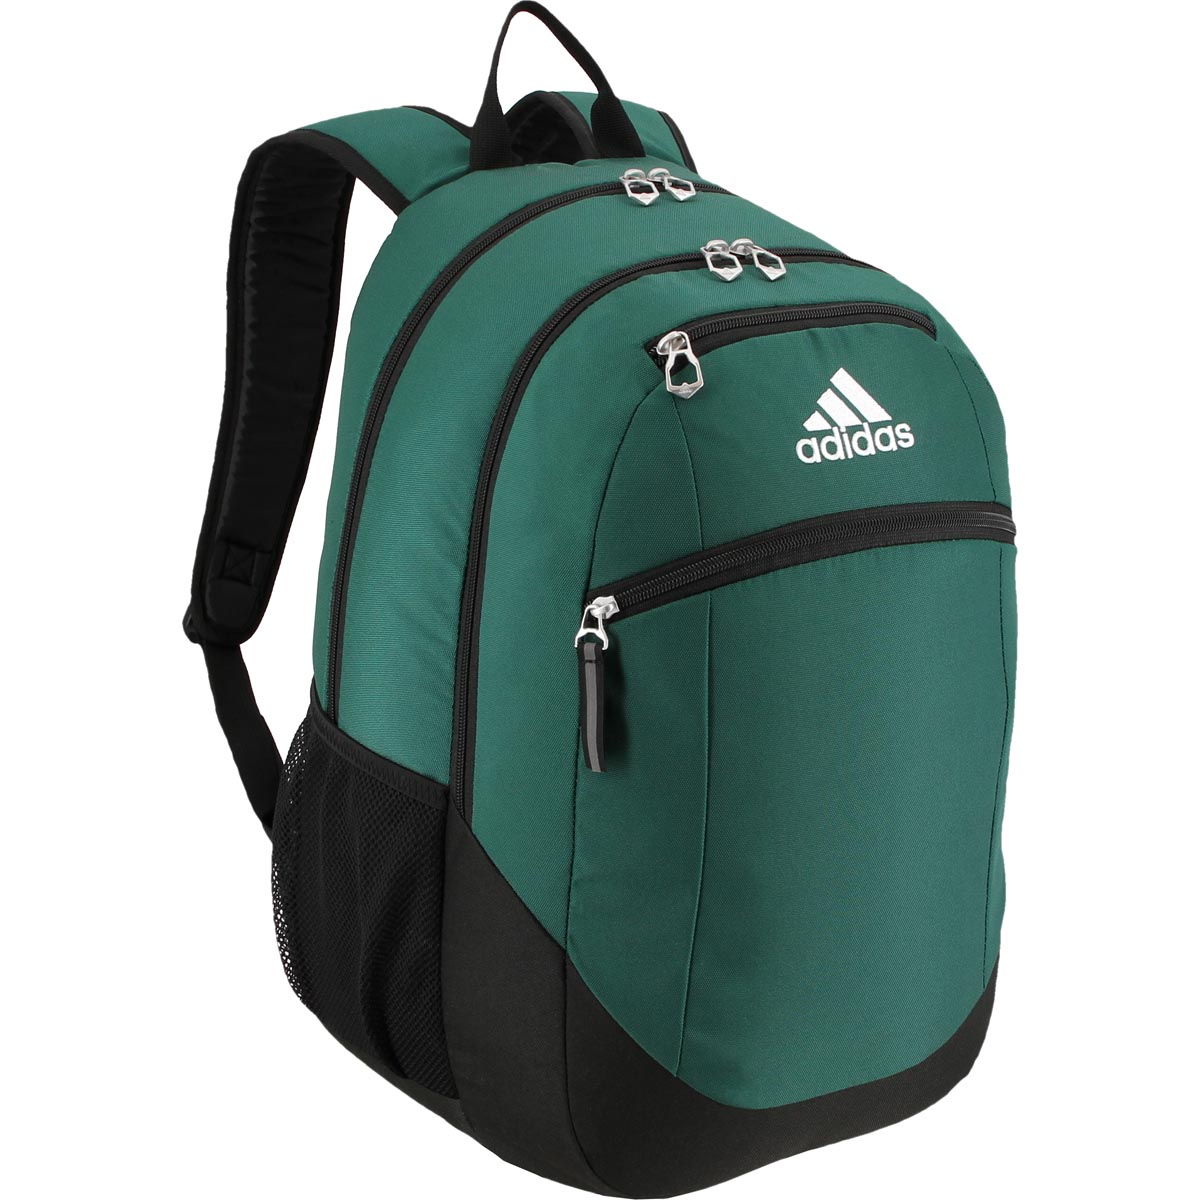 Adidas Striker II Backpack Dark Green | Black - image 1 of 10